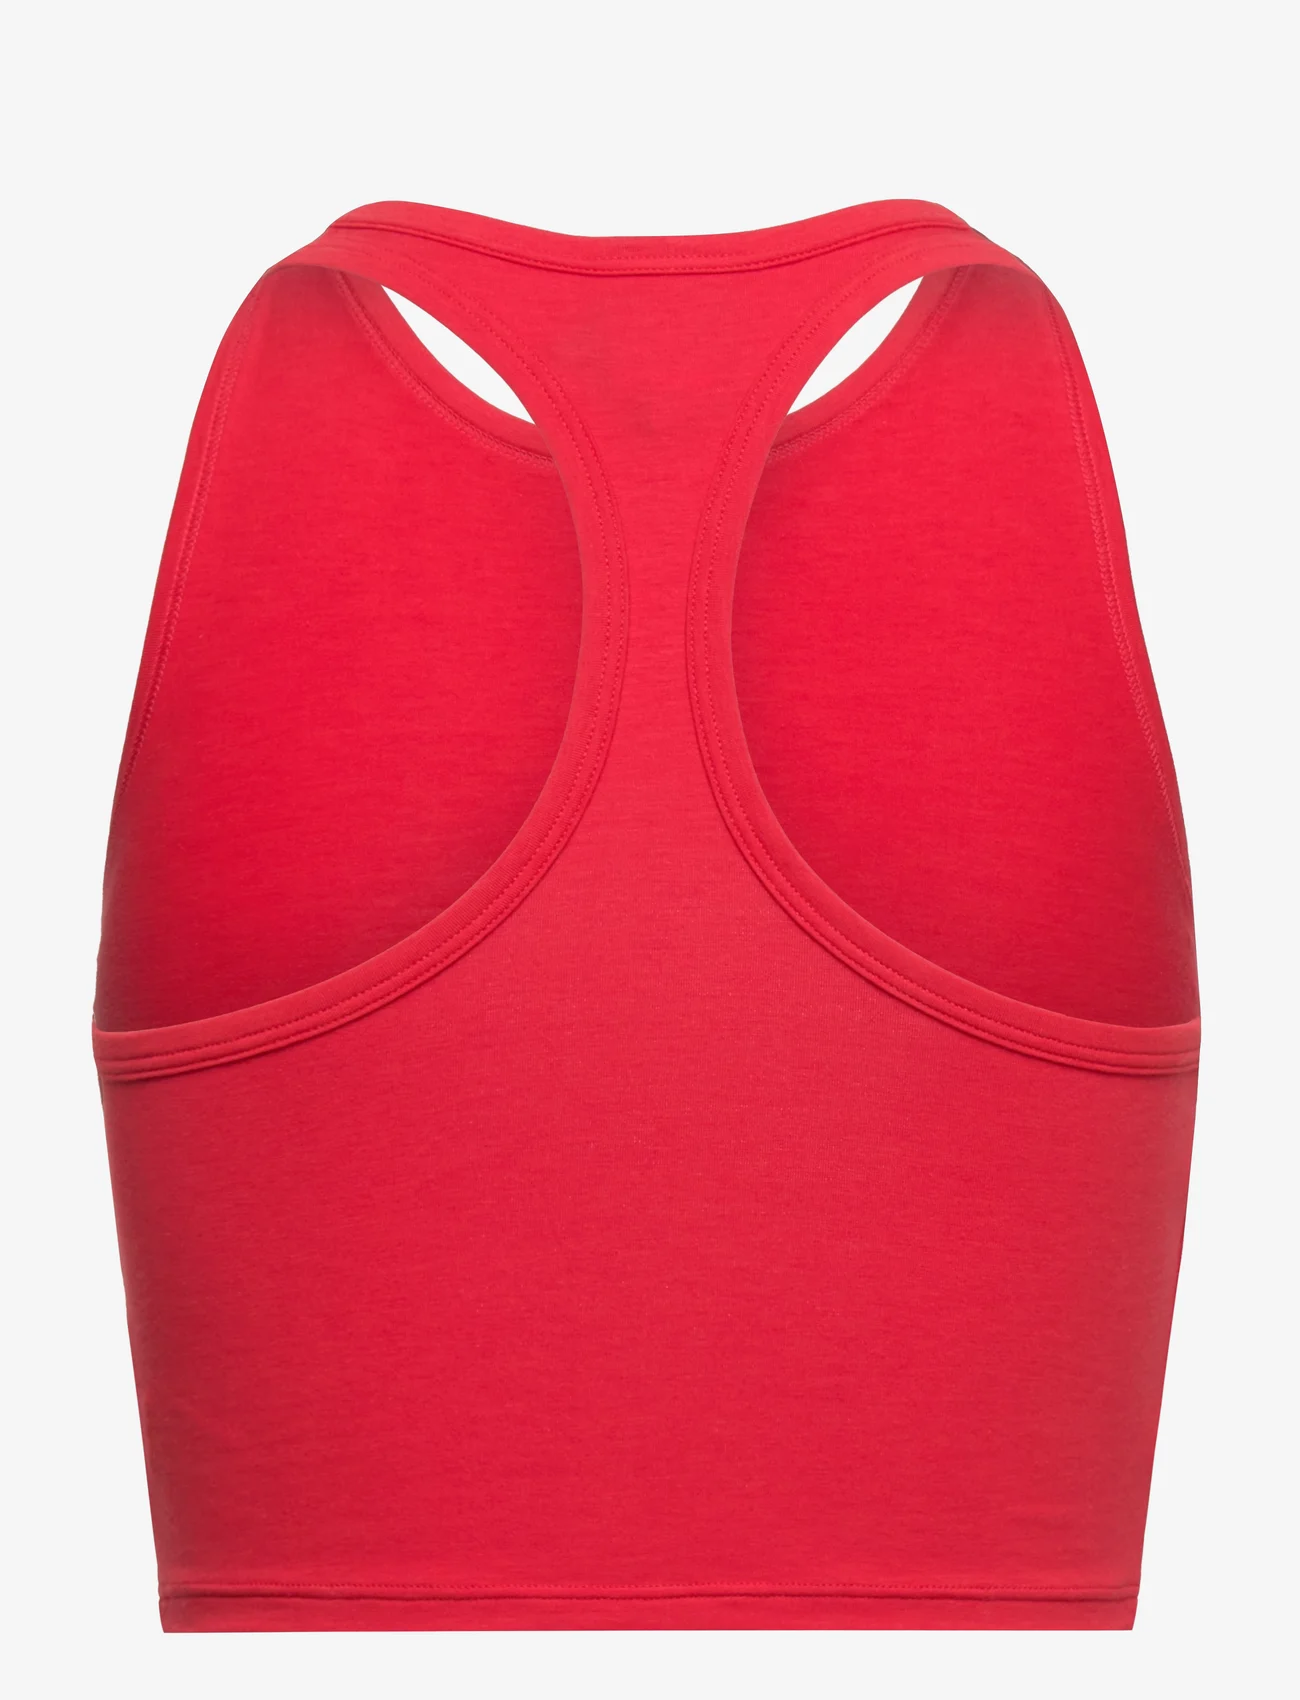 adidas Originals Underwear - Bustier - laagste prijzen - red - 1